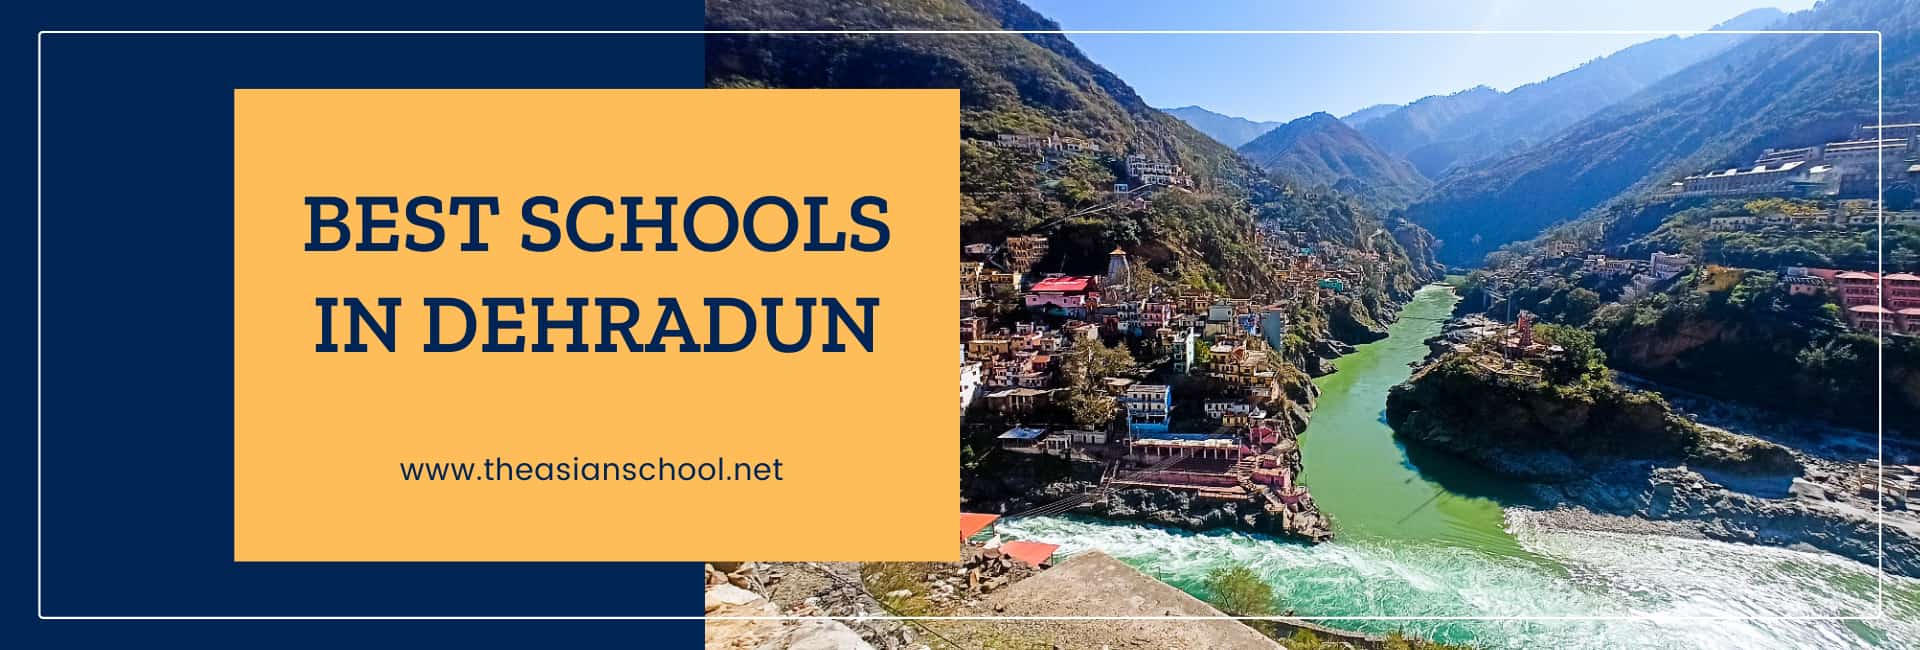 Best Schools in Dehradun